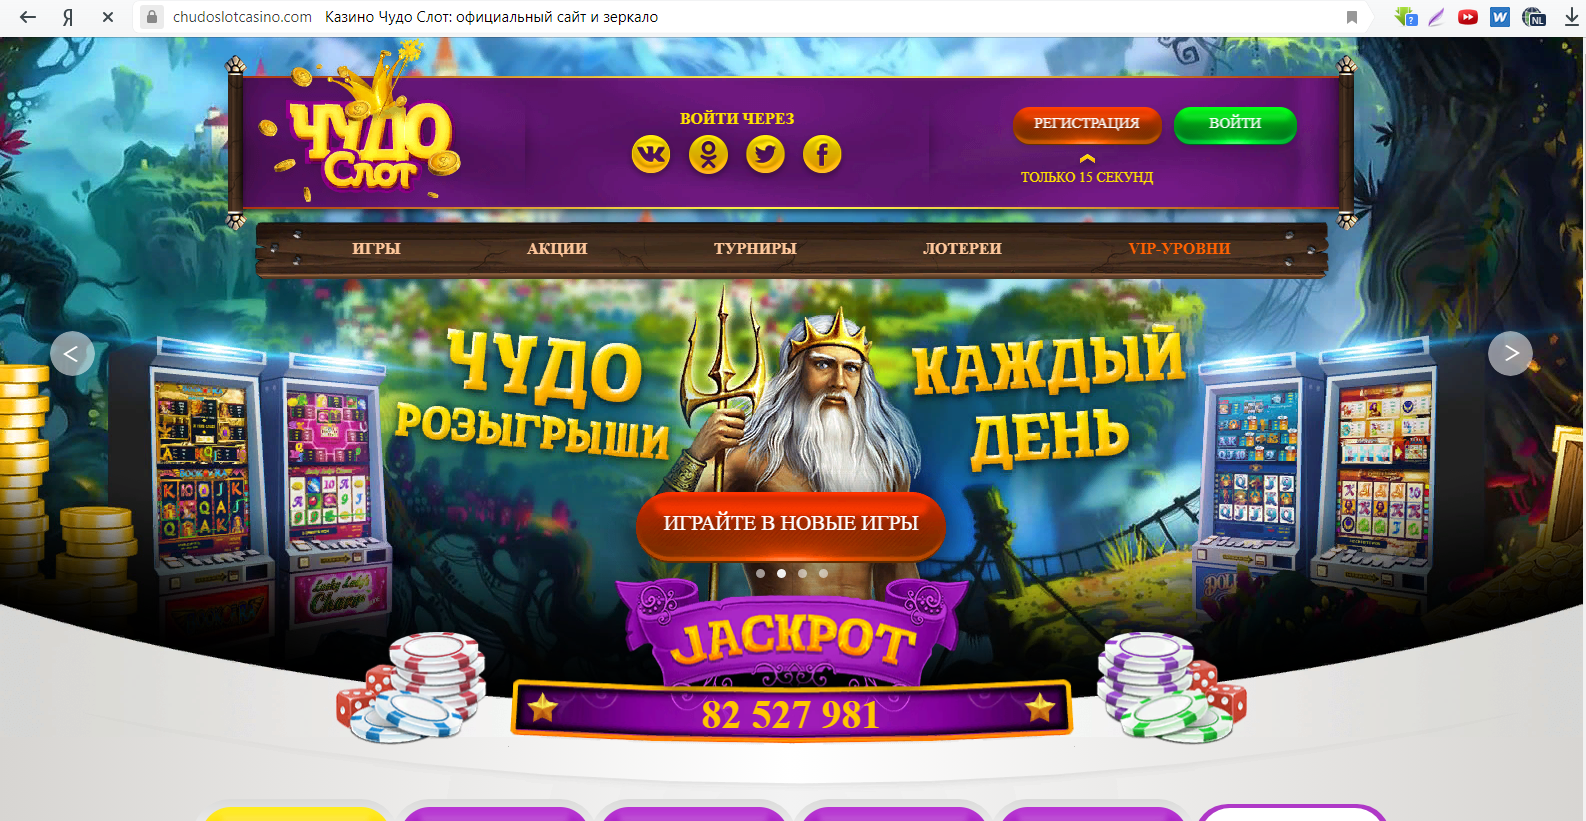 лицензированные онлайн казино в россии официальный сайты и отзывы